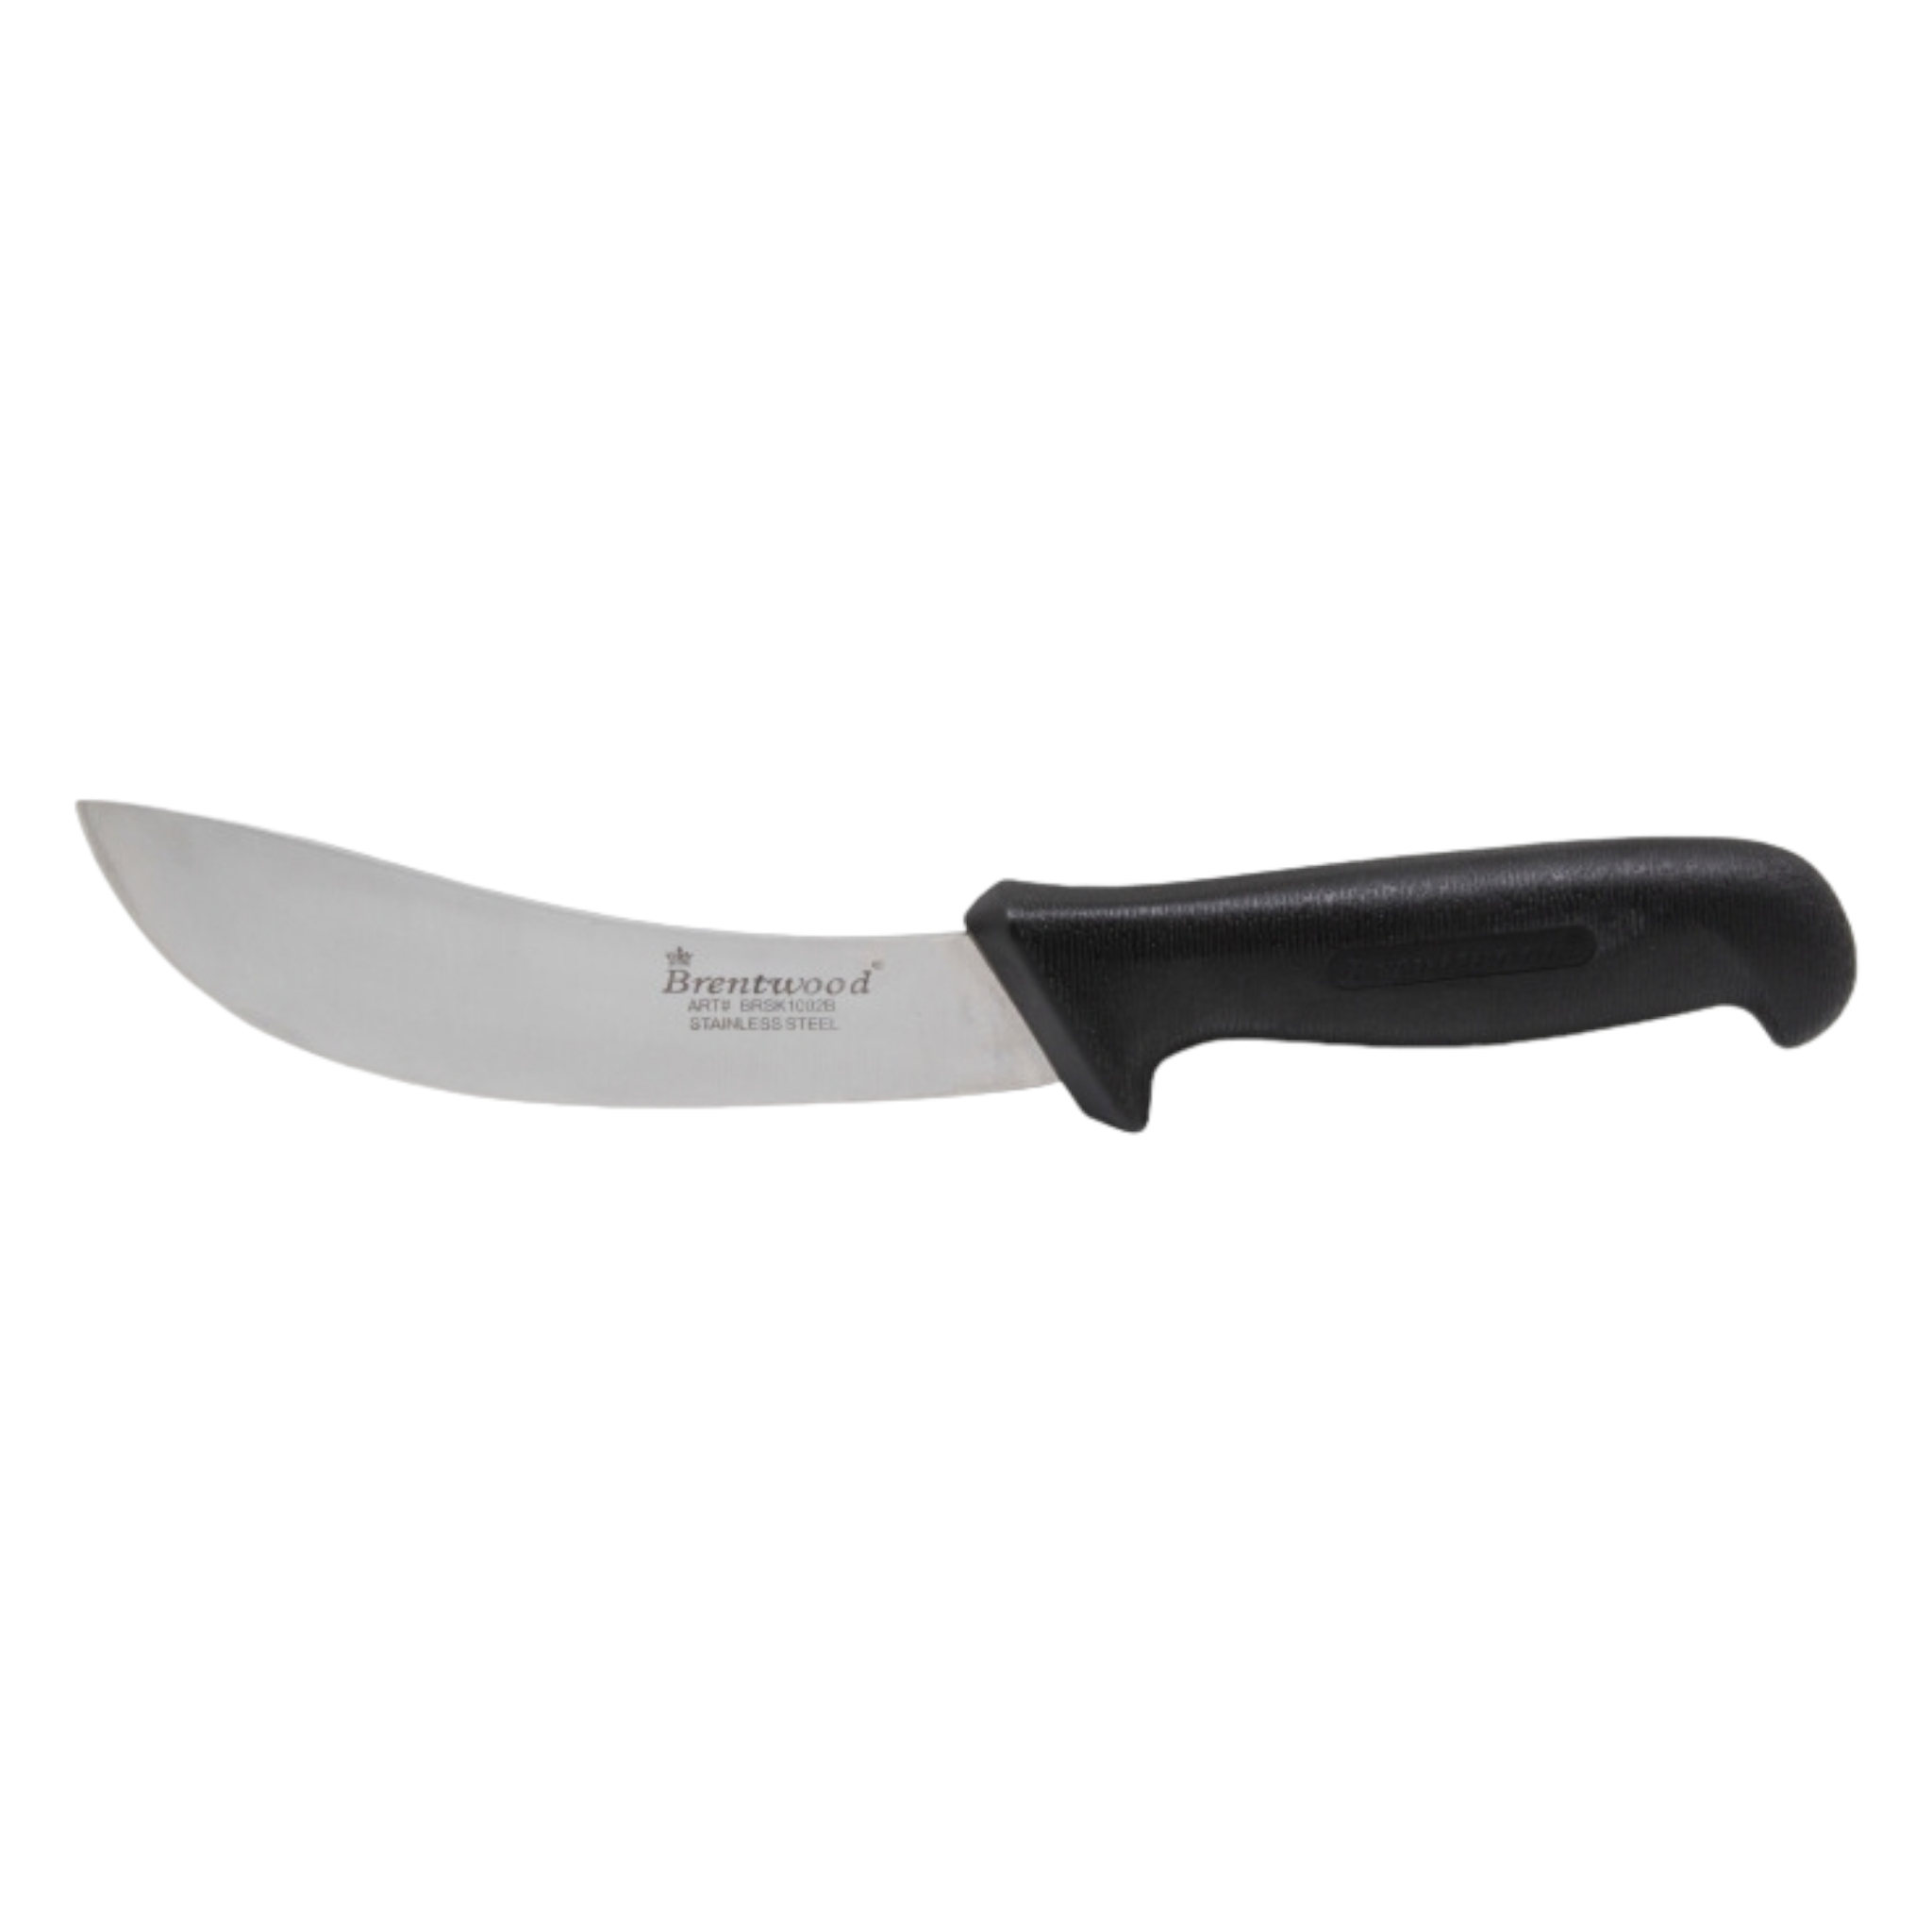 Knife Skinning Curved Black handle BRSK1002B